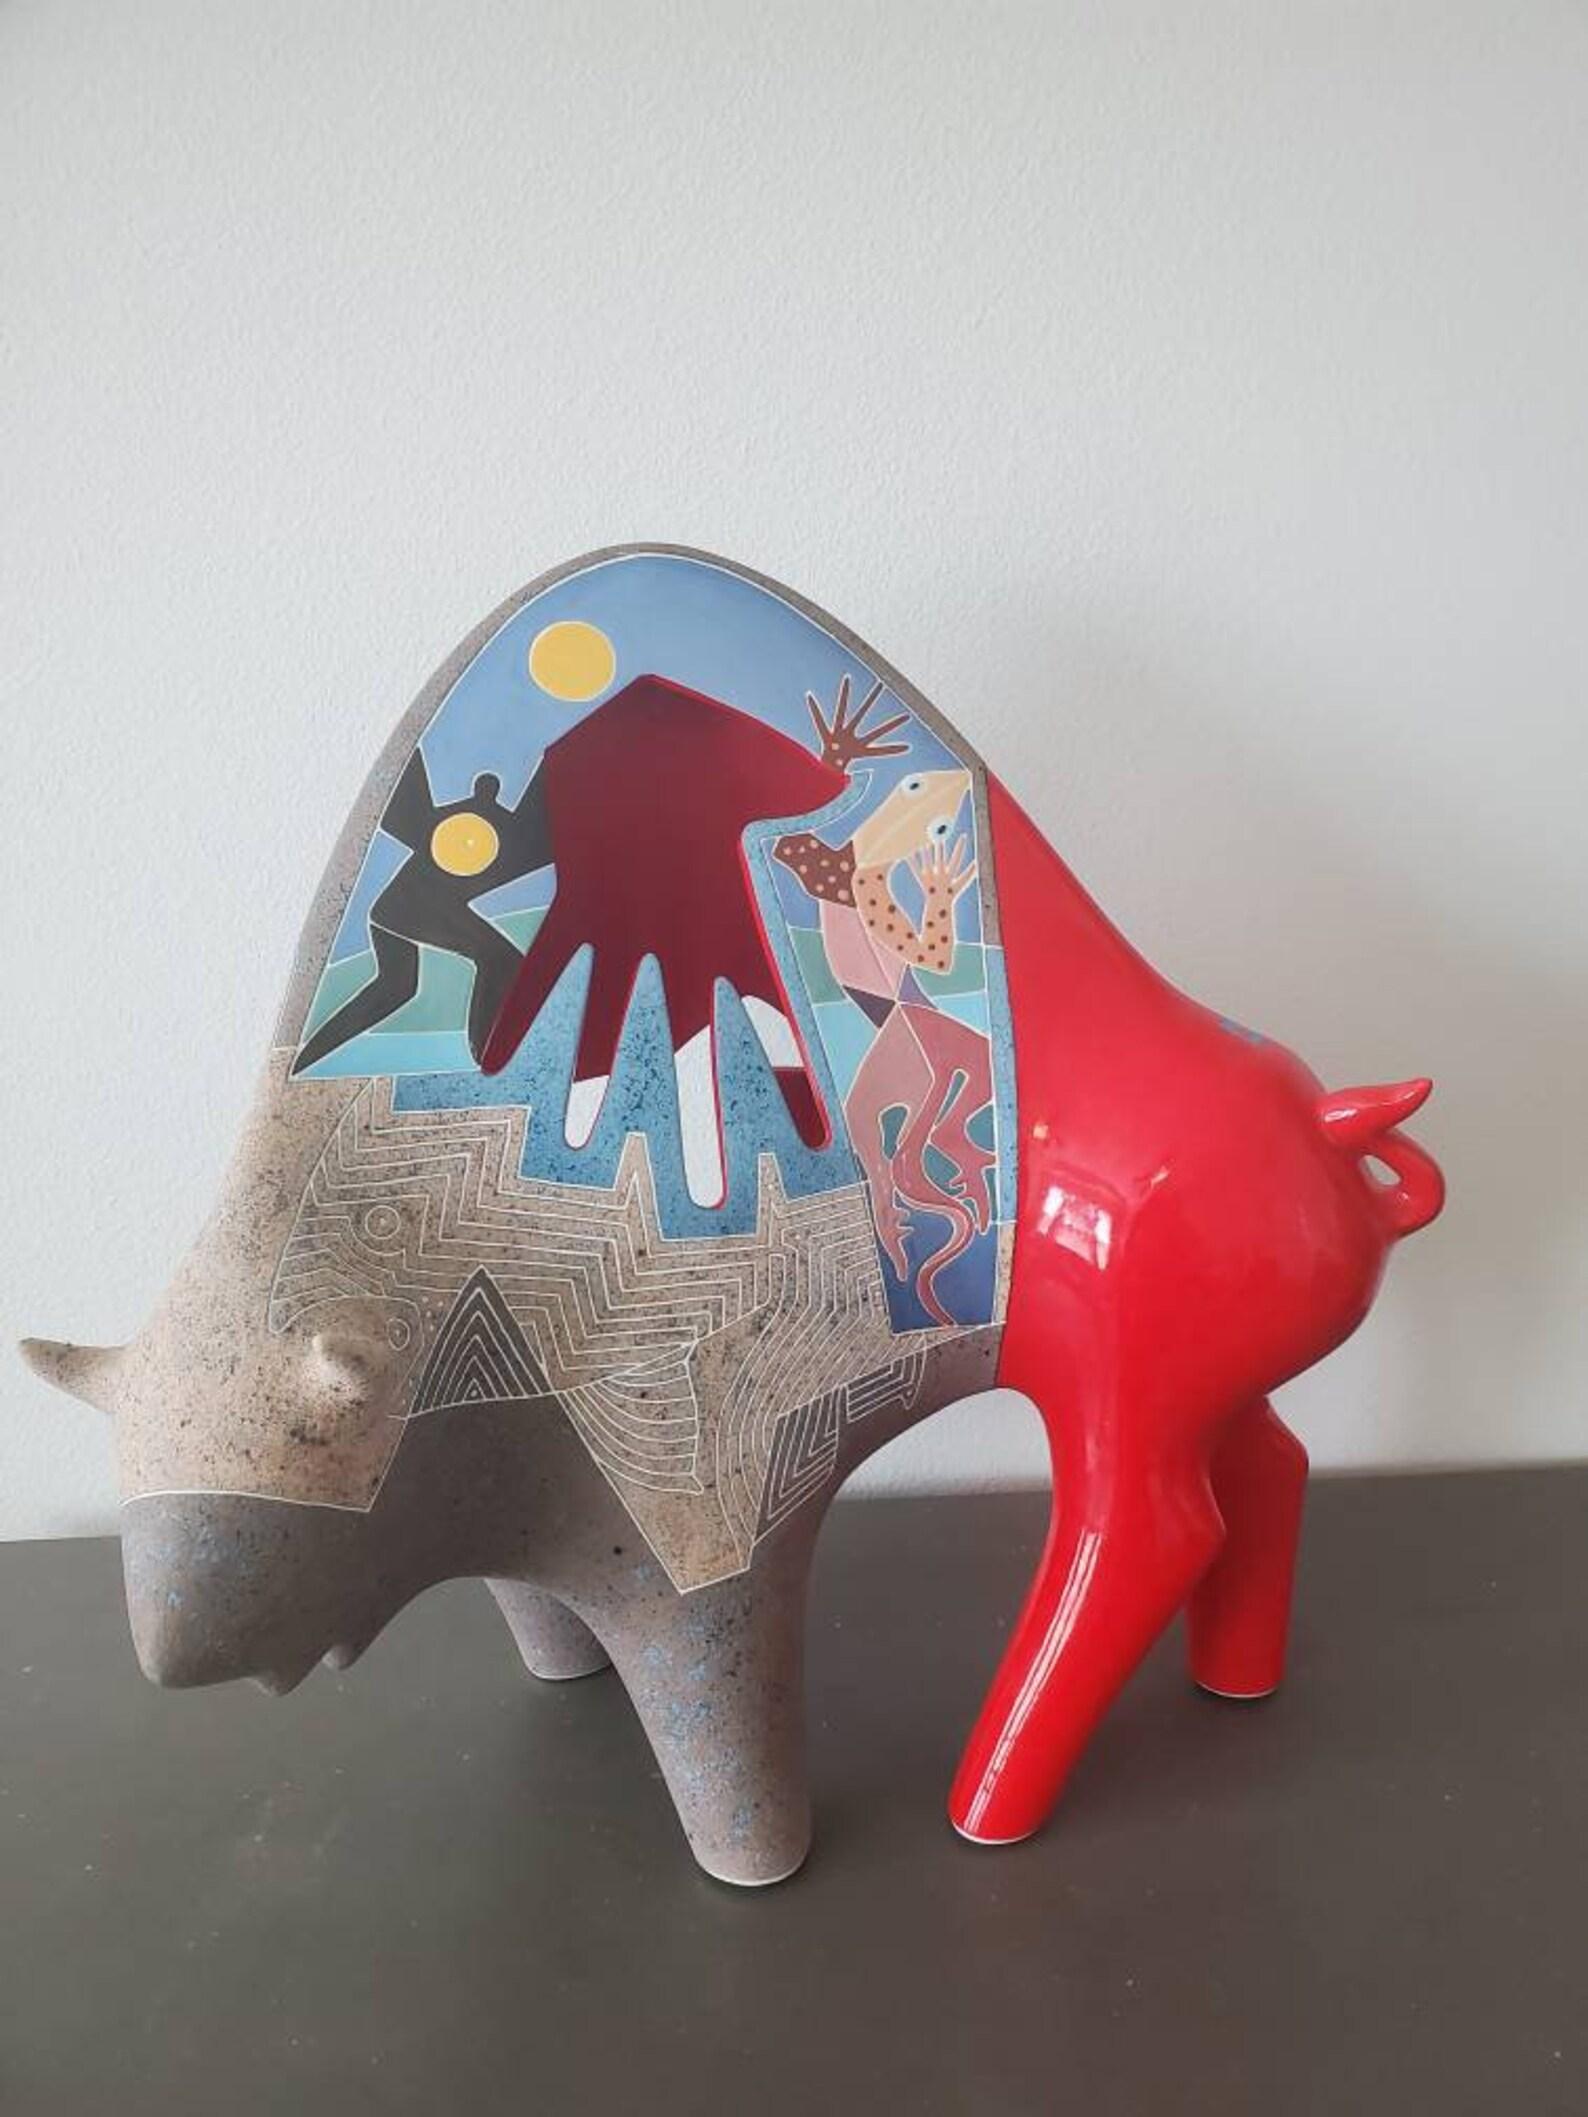 Une sculpture en céramique américaine d'un éclat unique, capturant l'essence d'un bison, dans un style moderne du sud-ouest, réalisée par les célèbres artistes Gene (1945-2006) et Rebecca Tobey (née en 1948), mari et femme.

Cette grande sculpture